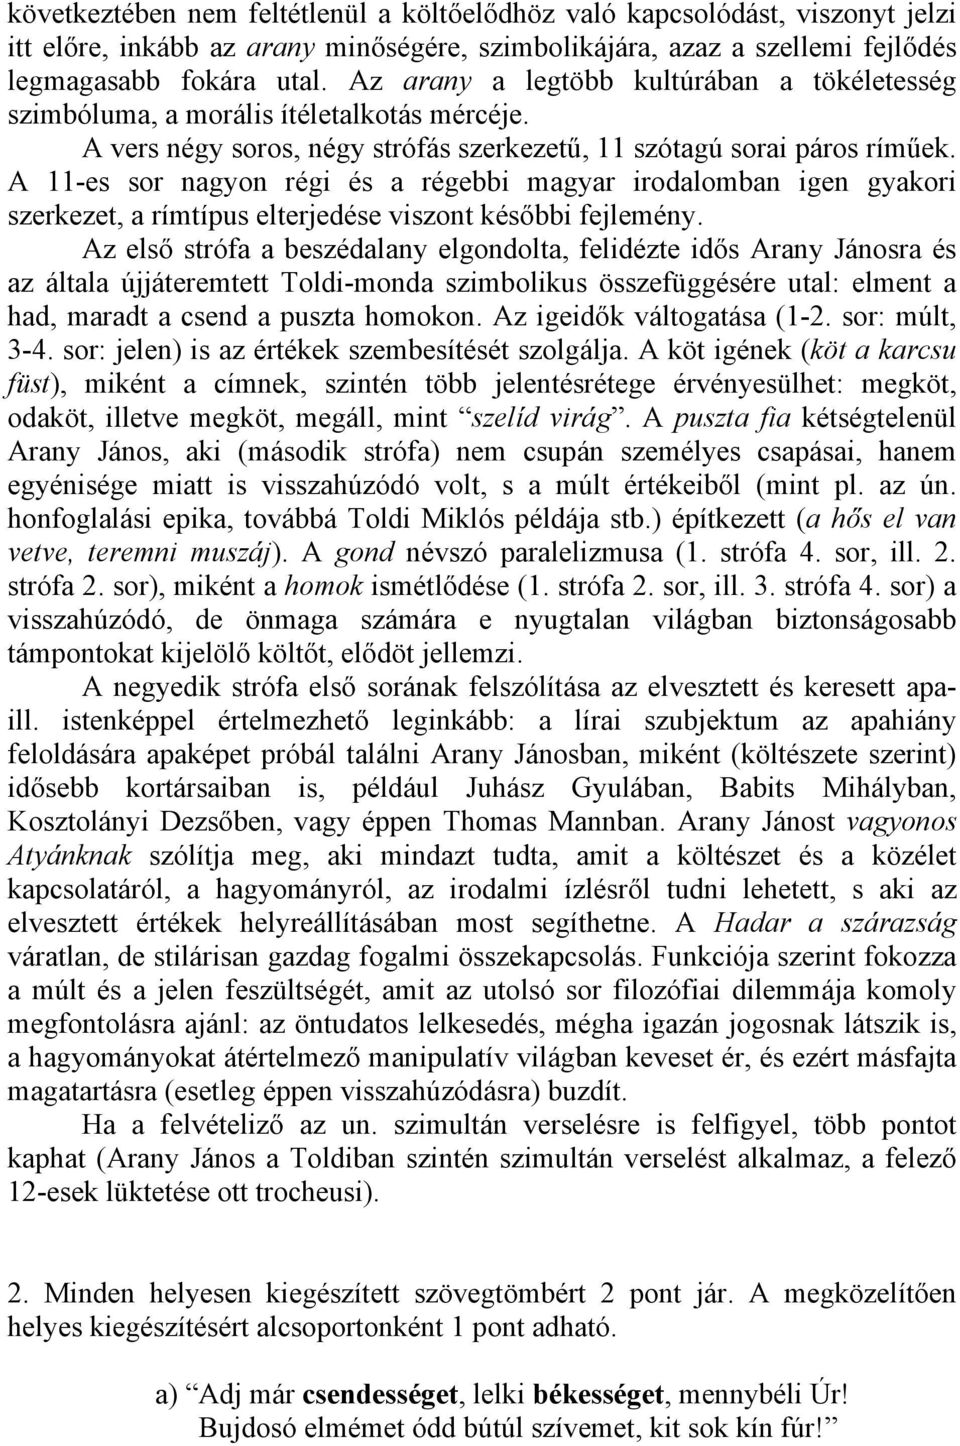 A 11-es sor nagyon régi és a régebbi magyar irodalomban igen gyakori szerkezet, a rímtípus elterjedése viszont későbbi fejlemény.